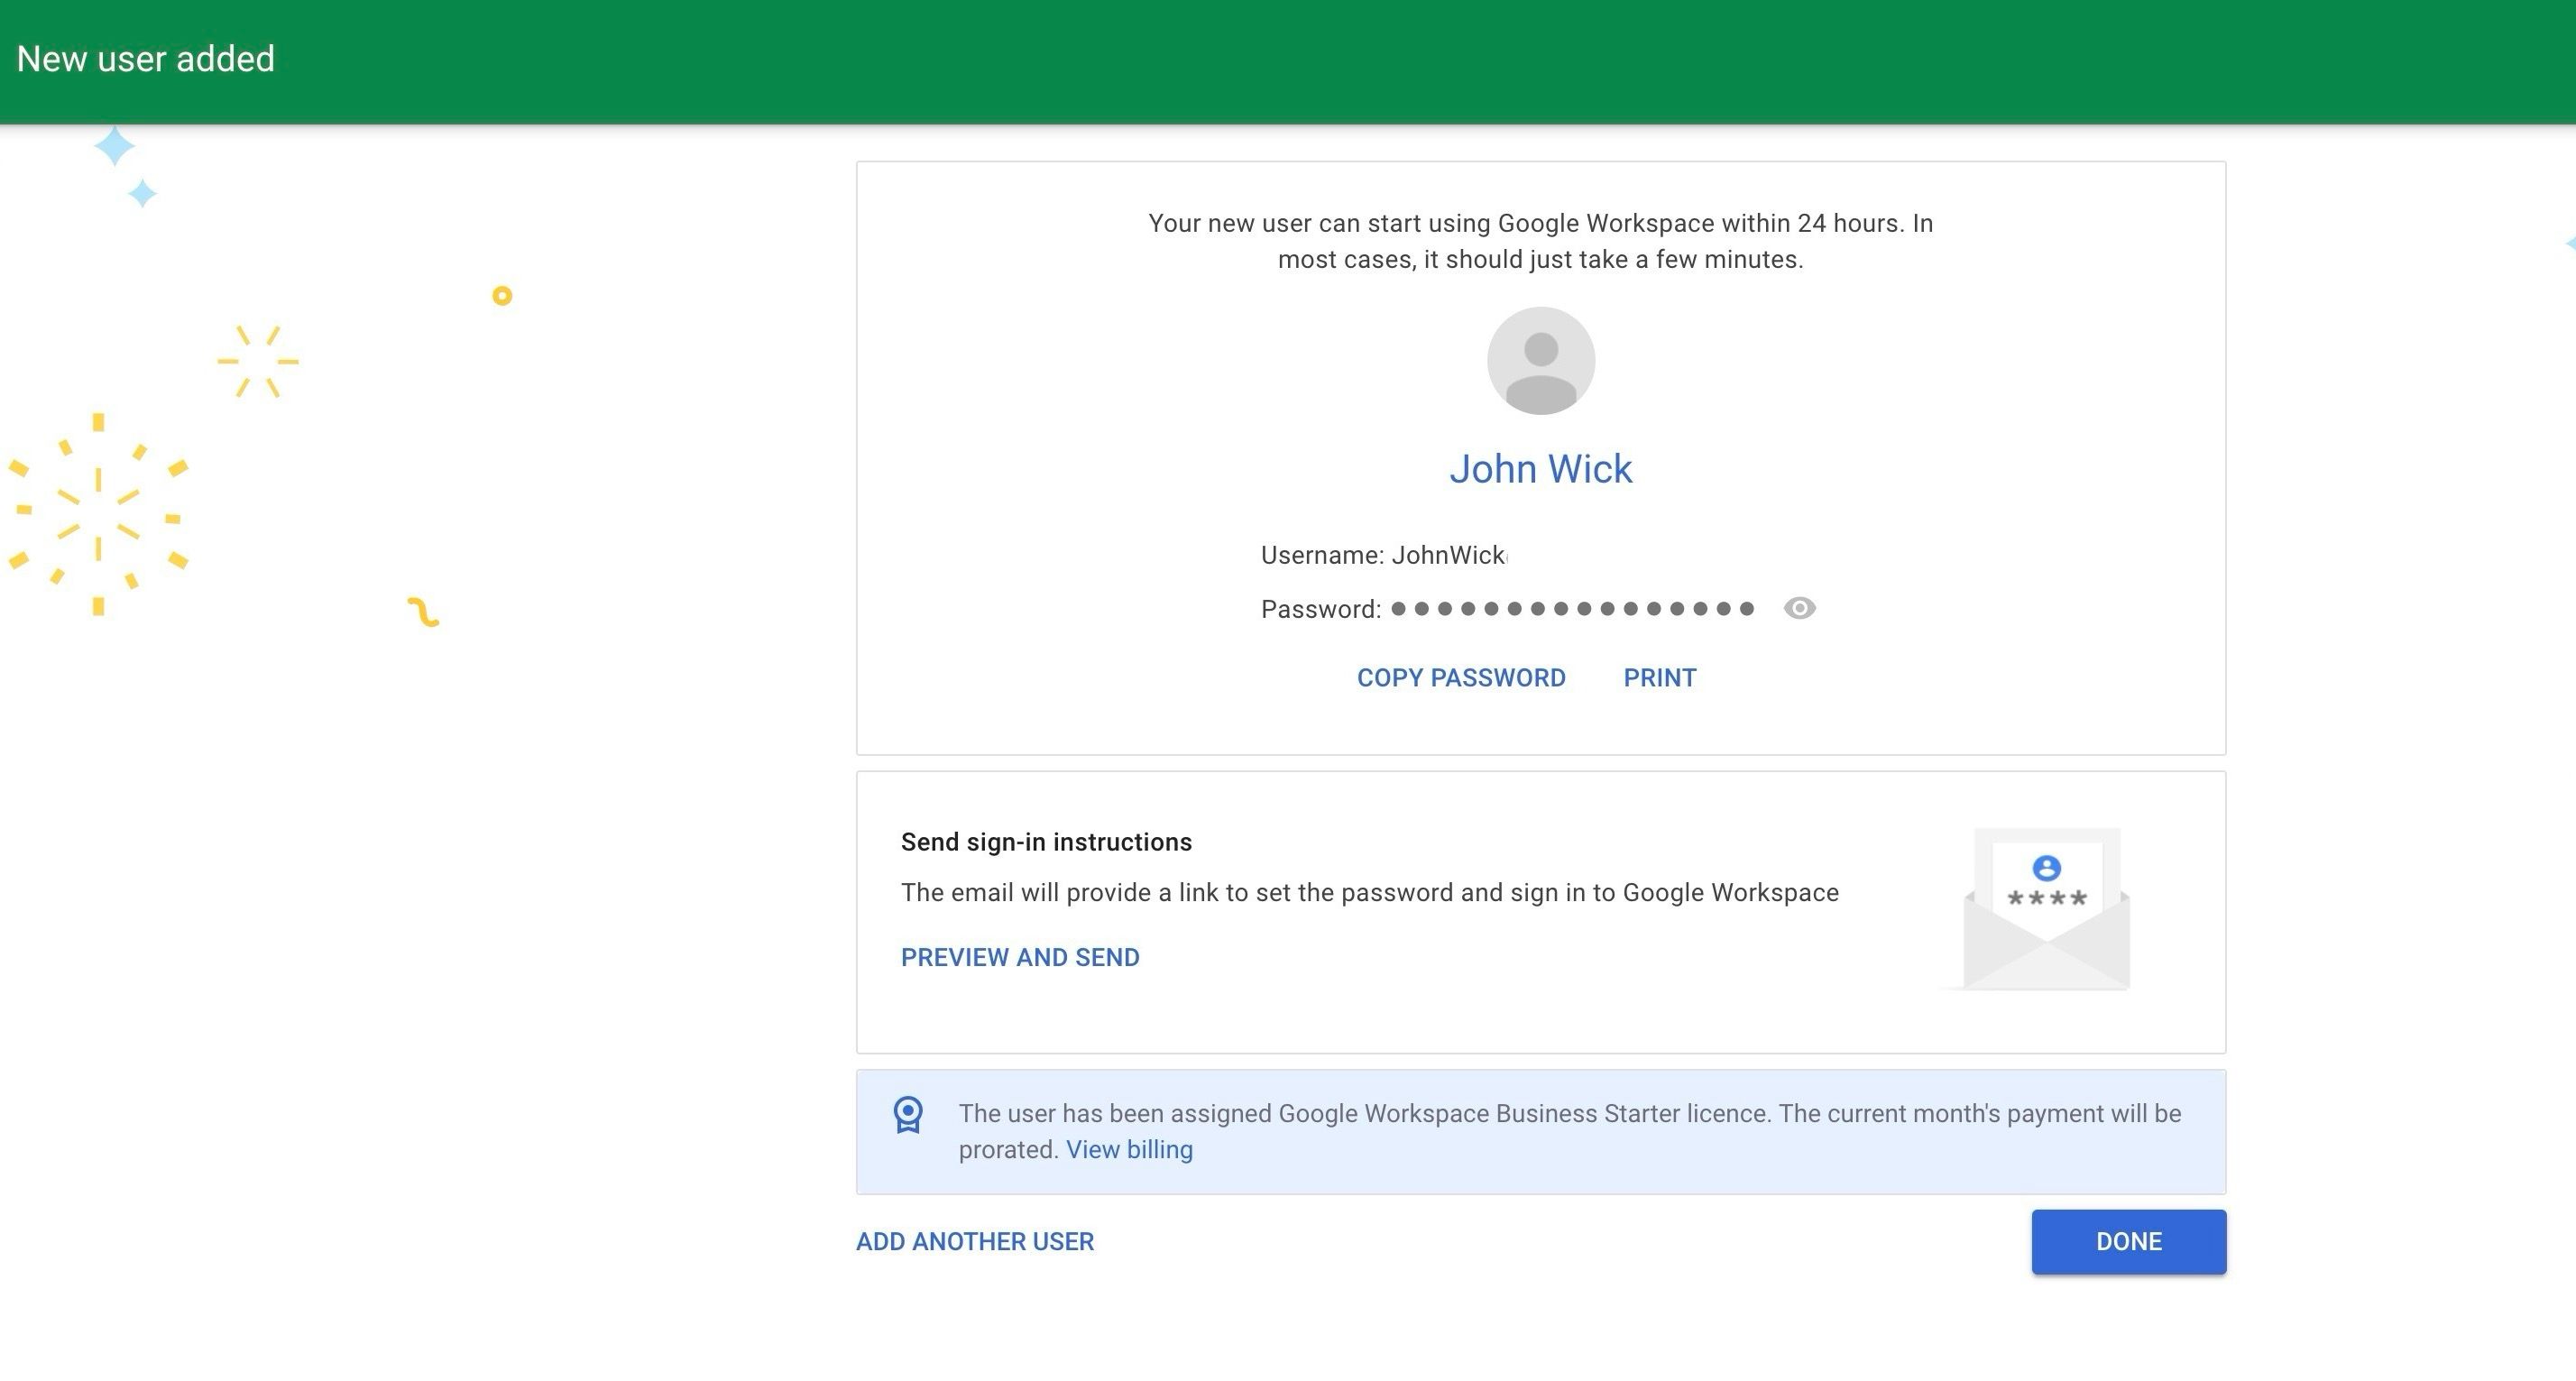 convite para novo usuário enviado ao Admin Console do Google Workspace